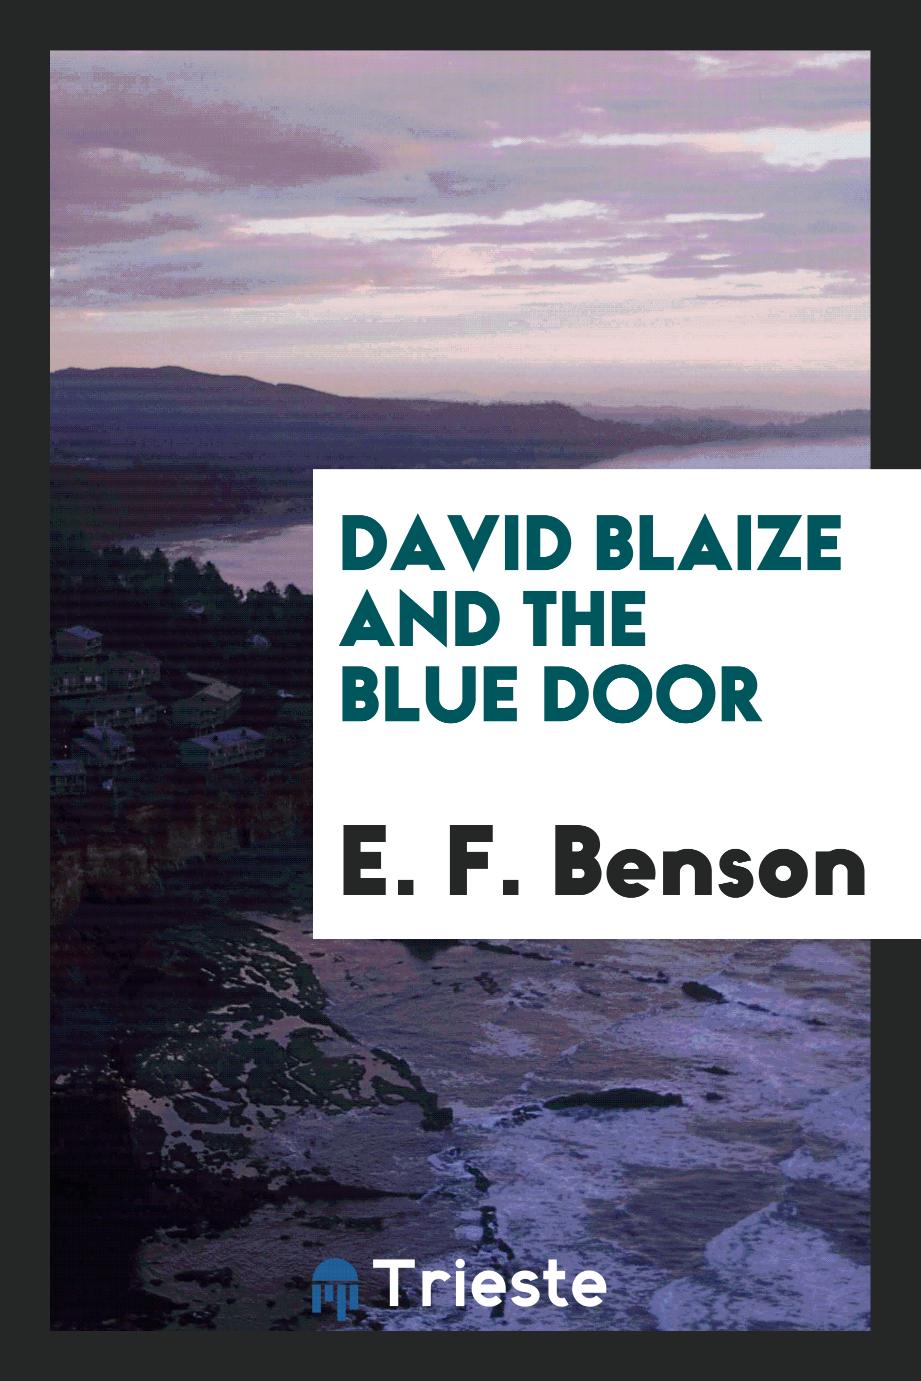 David Blaize and the blue door